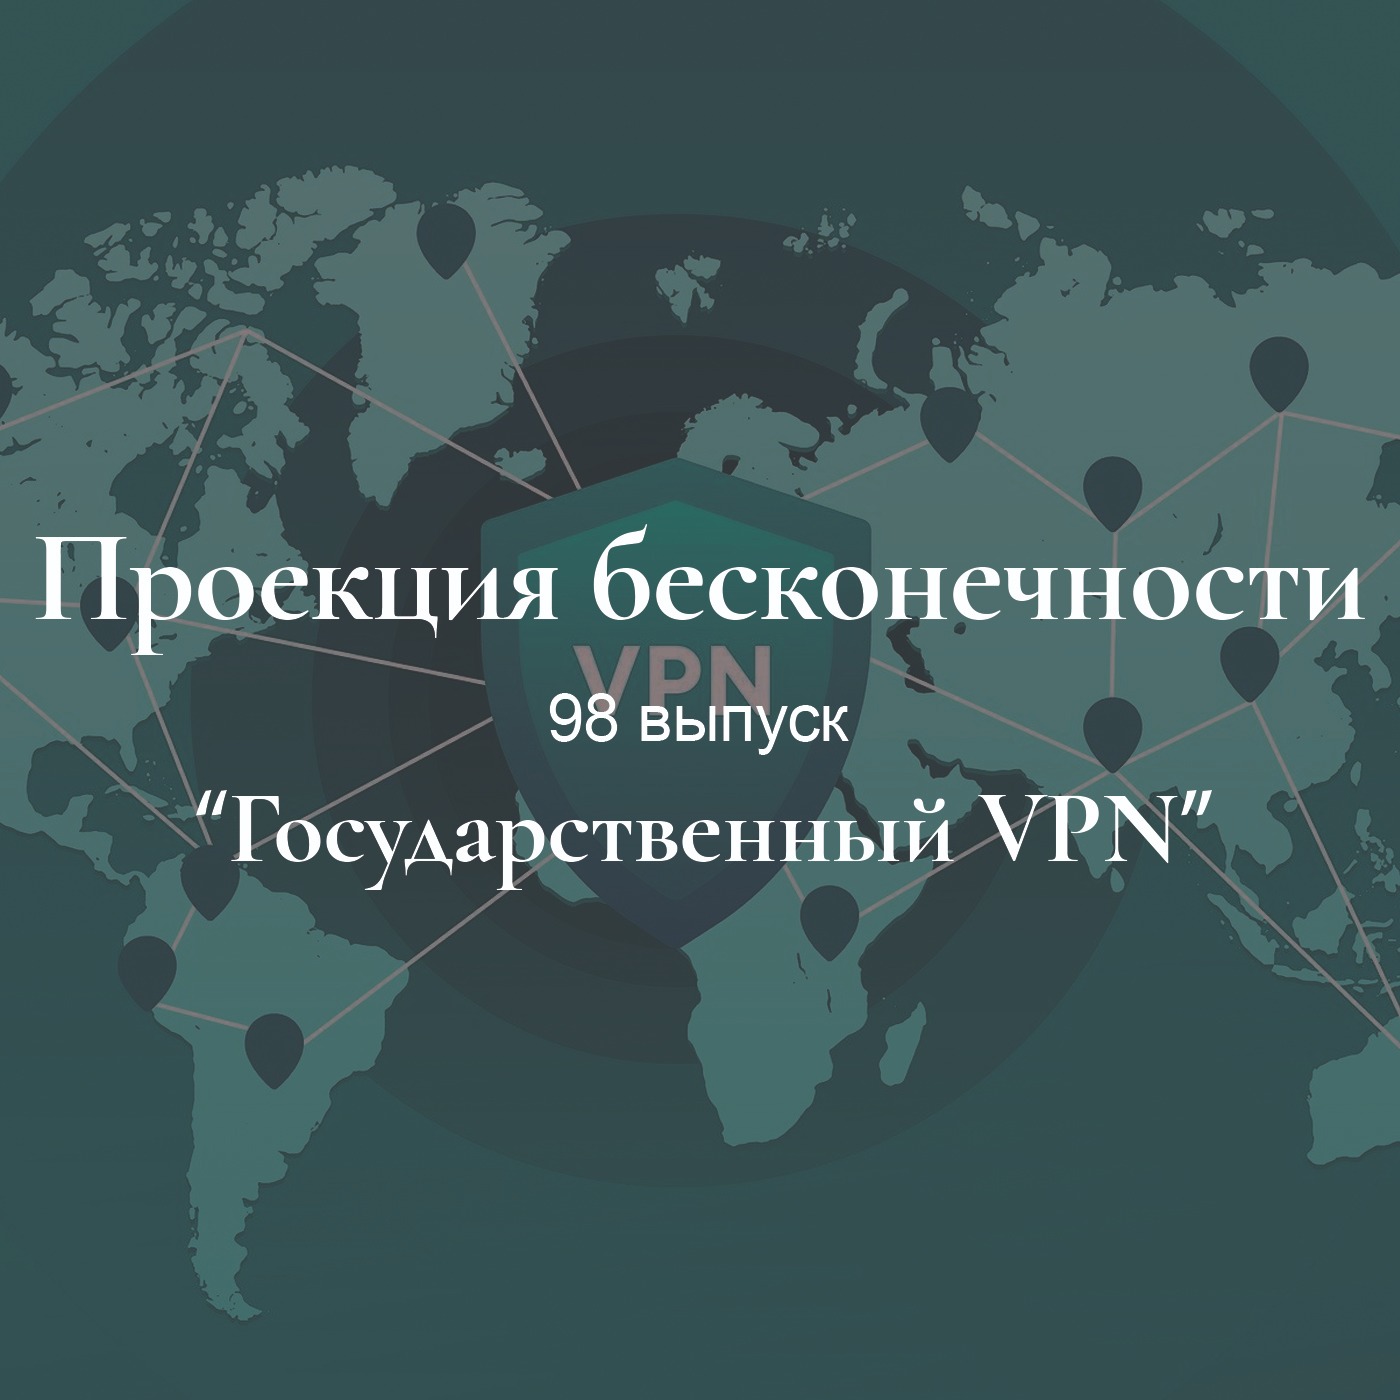 Государственный VPN